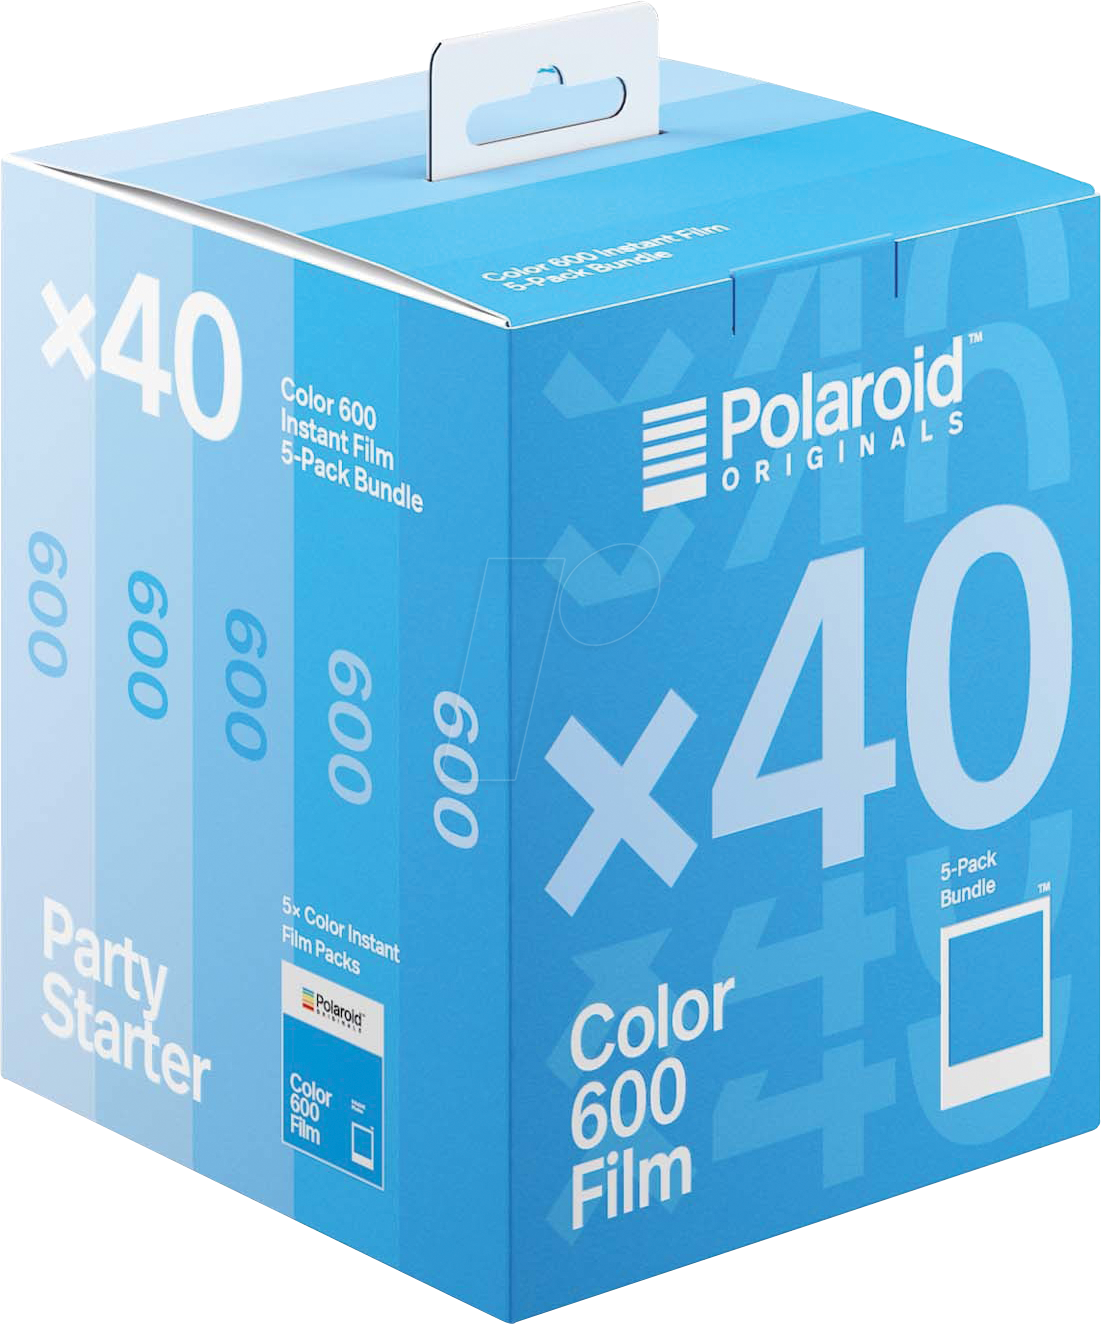 POLAROID 6013 - 600 Color Film Pack 40x von Polaroid